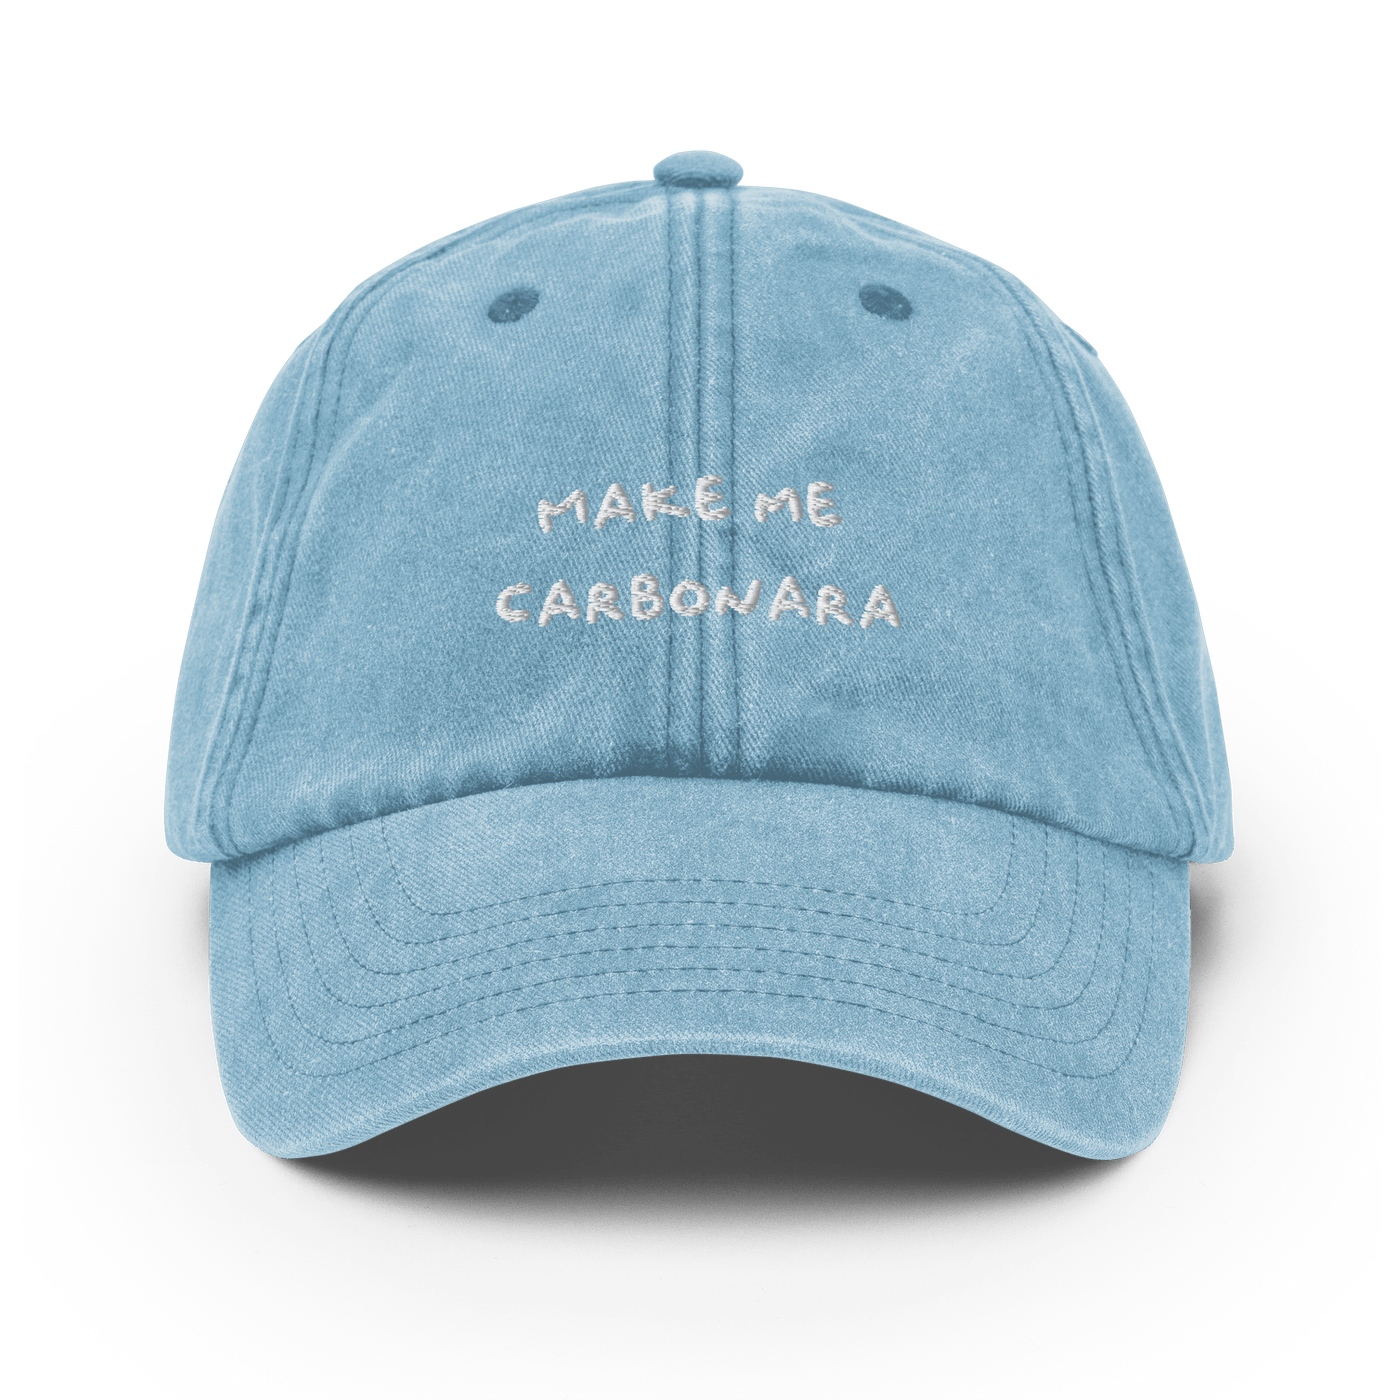 Make me Carbonara Vintage Hat - Vintage Light Denim - - Just Another Cap Store